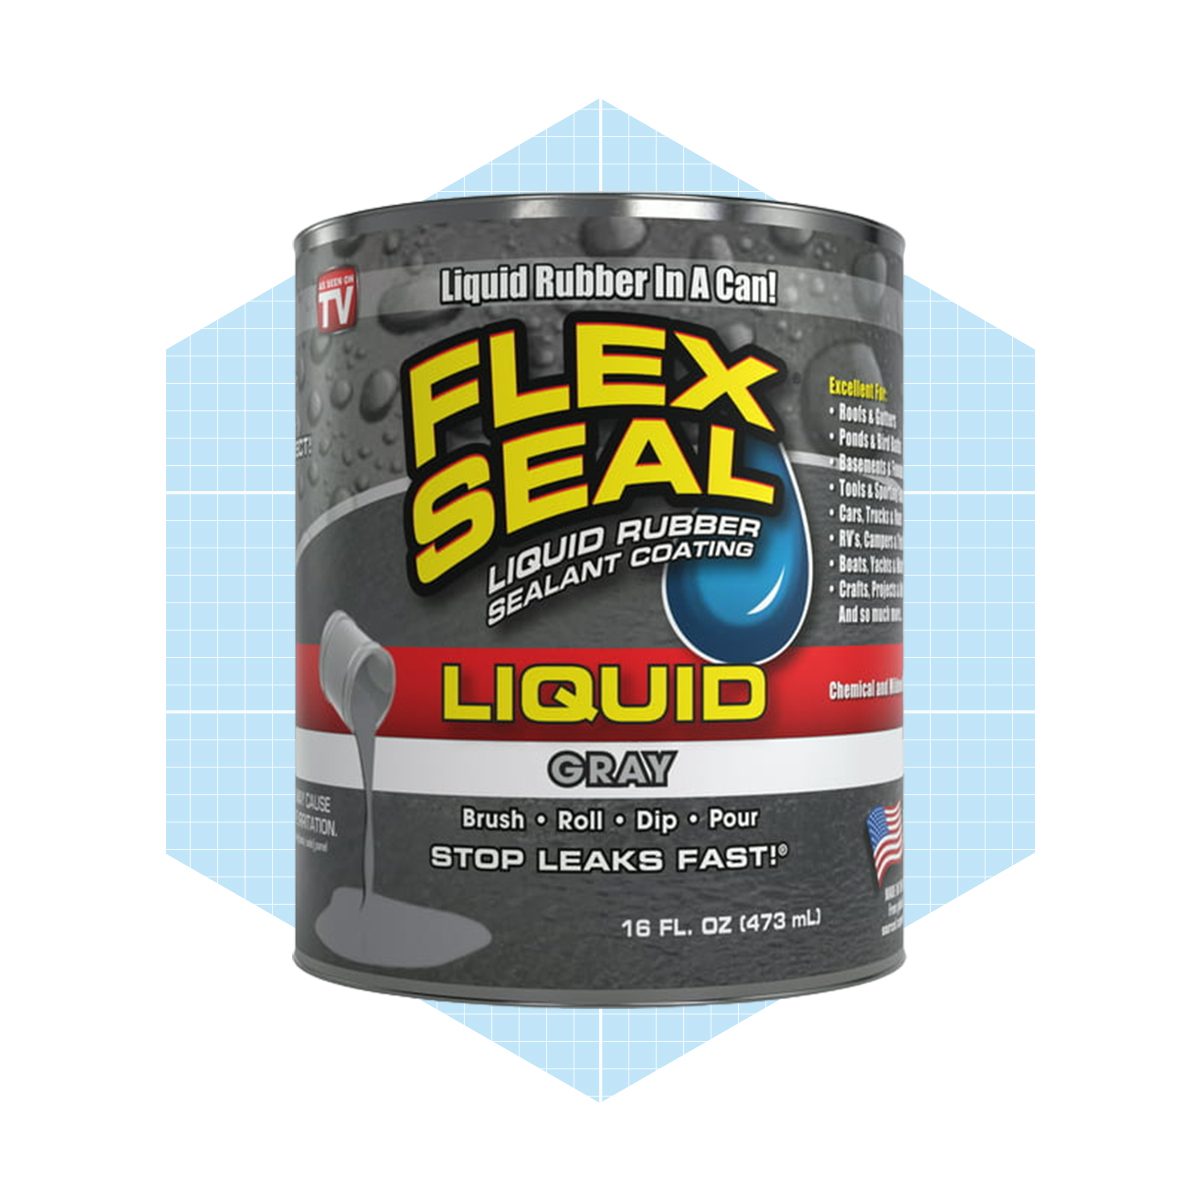 Flex Seal Liquid Rubber Sealant Paint Ecomm Via Walmart.com